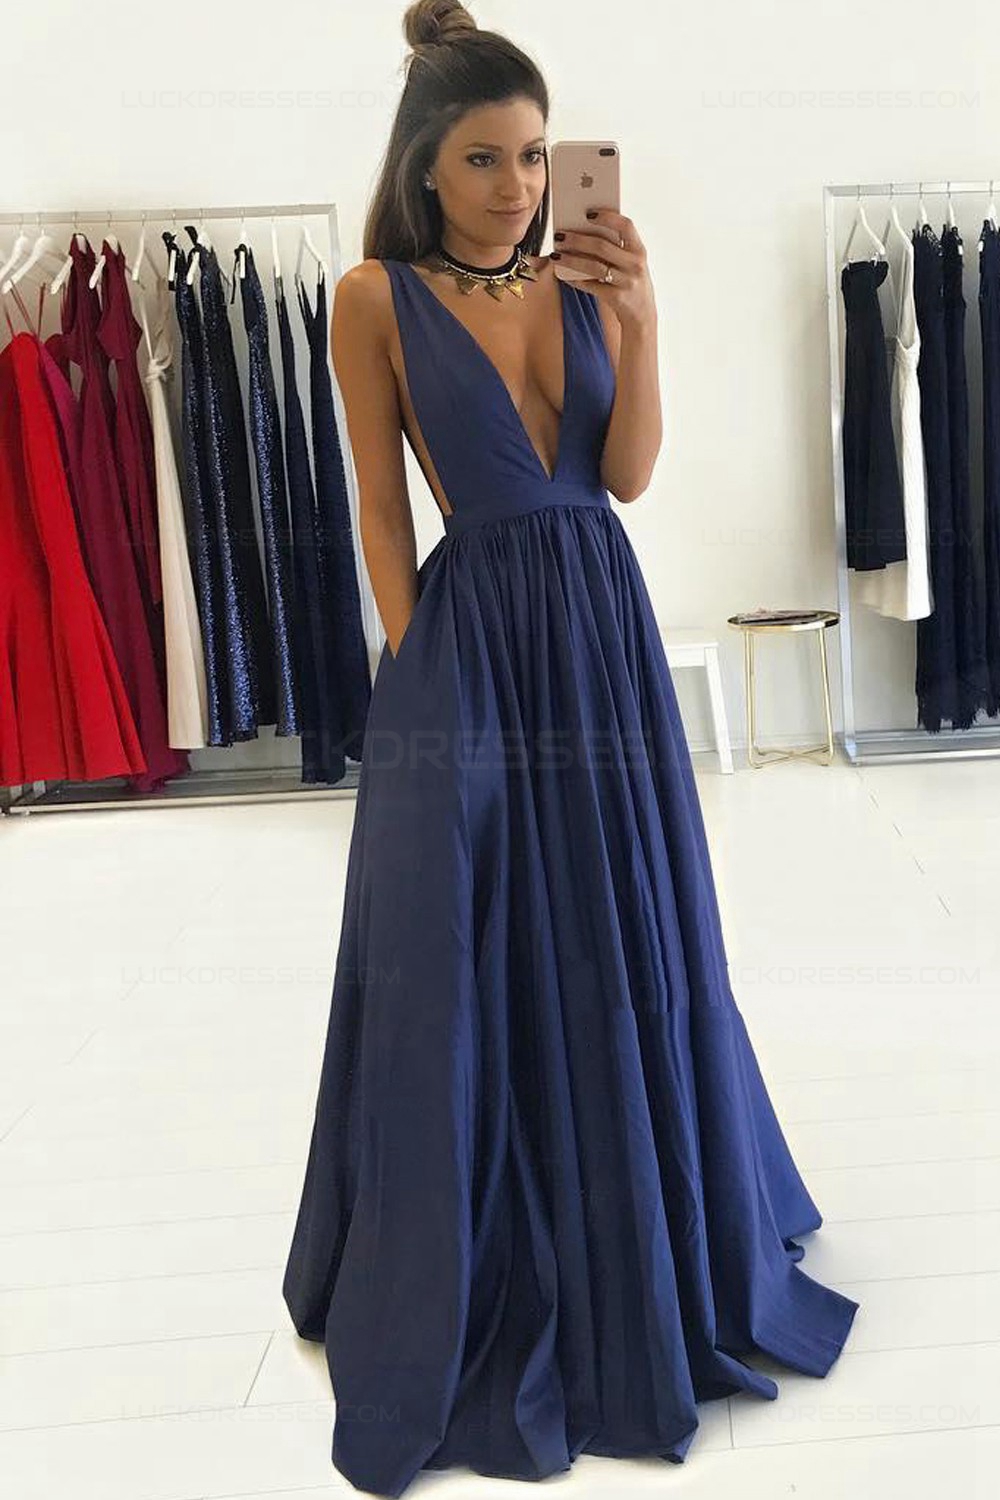 V-neck Long Black Lace Prom Dresses with Slit Side – loveangeldress